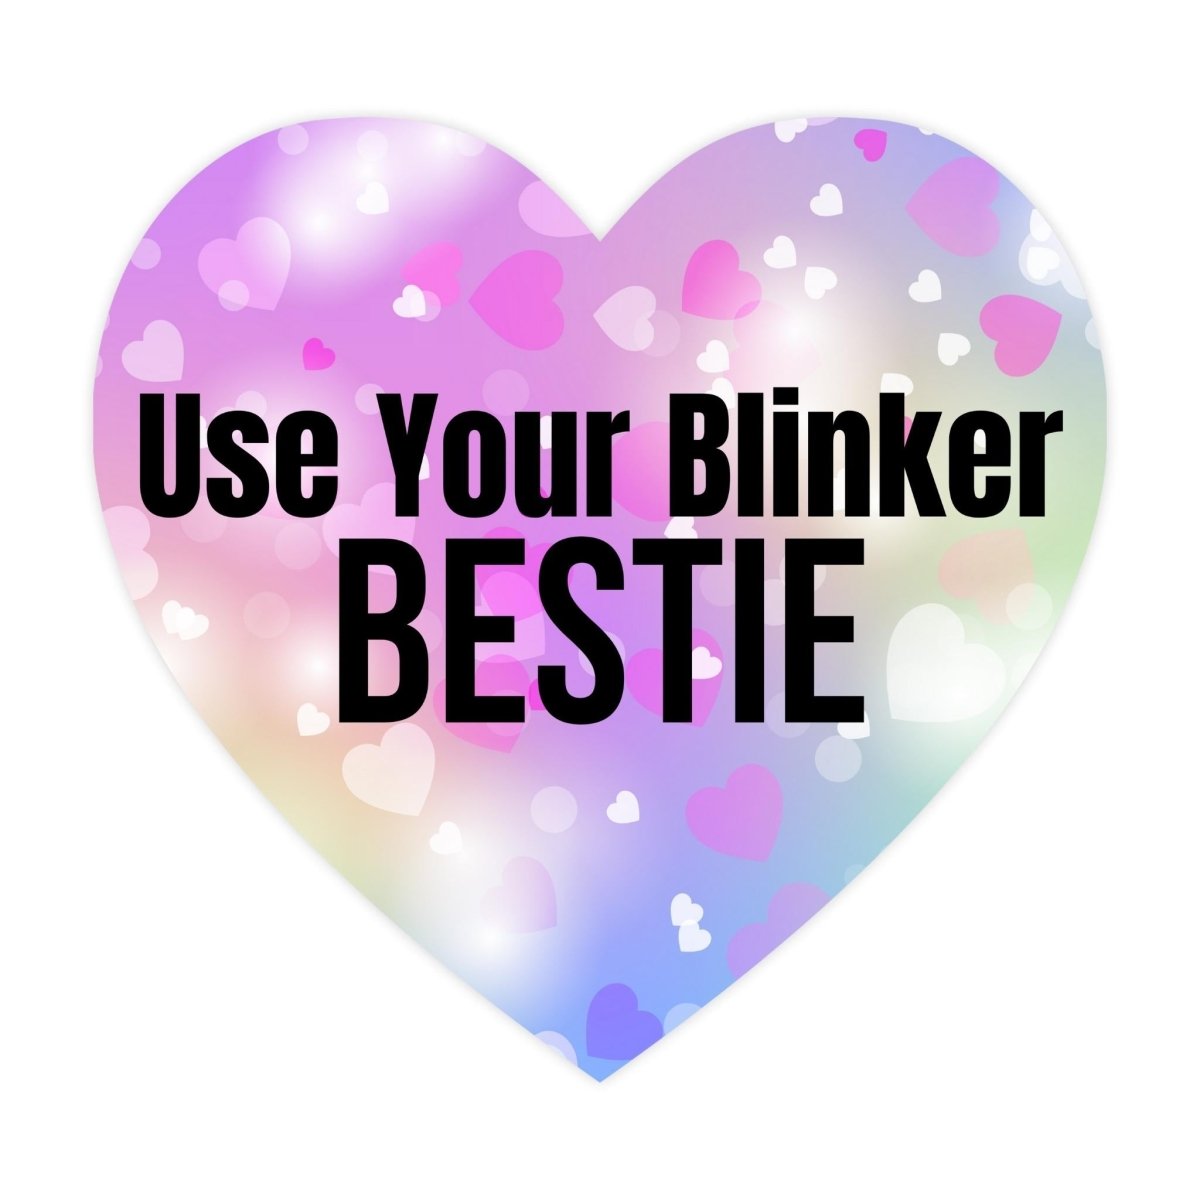 Use Your Blinker Bestie Meme Bumper Sticker - stickerbullUse Your Blinker Bestie Meme Bumper StickerRetail StickerstickerbullstickerbullSage_BlinkerBestie [#234]Use Your Blinker Bestie Meme Bumper Sticker